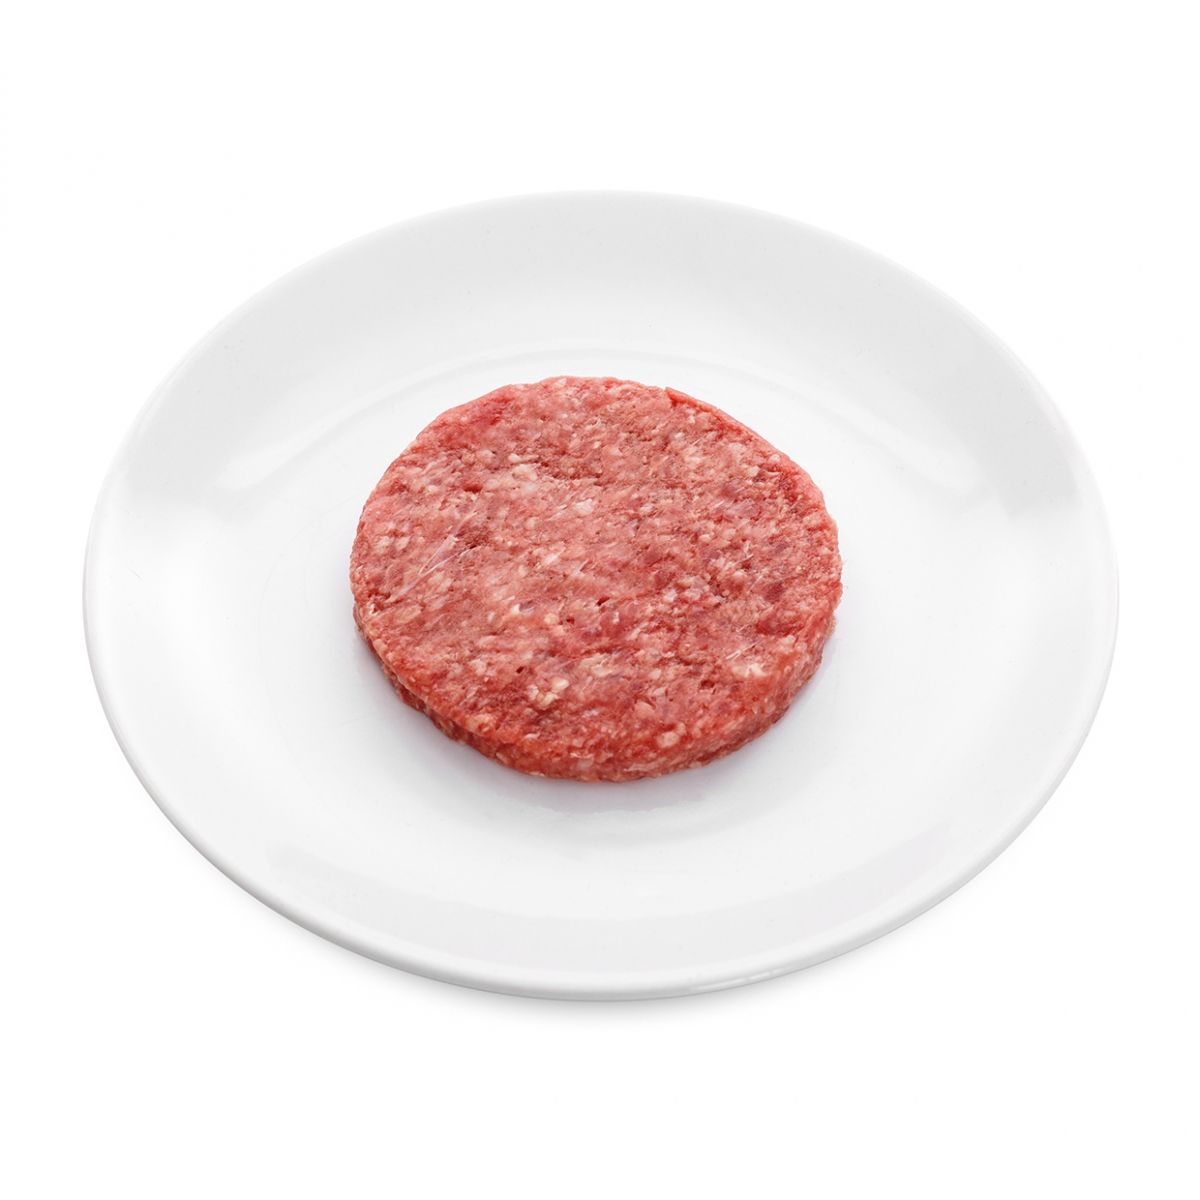 Imagen en la que se ve una hamburguesa sin cocinar